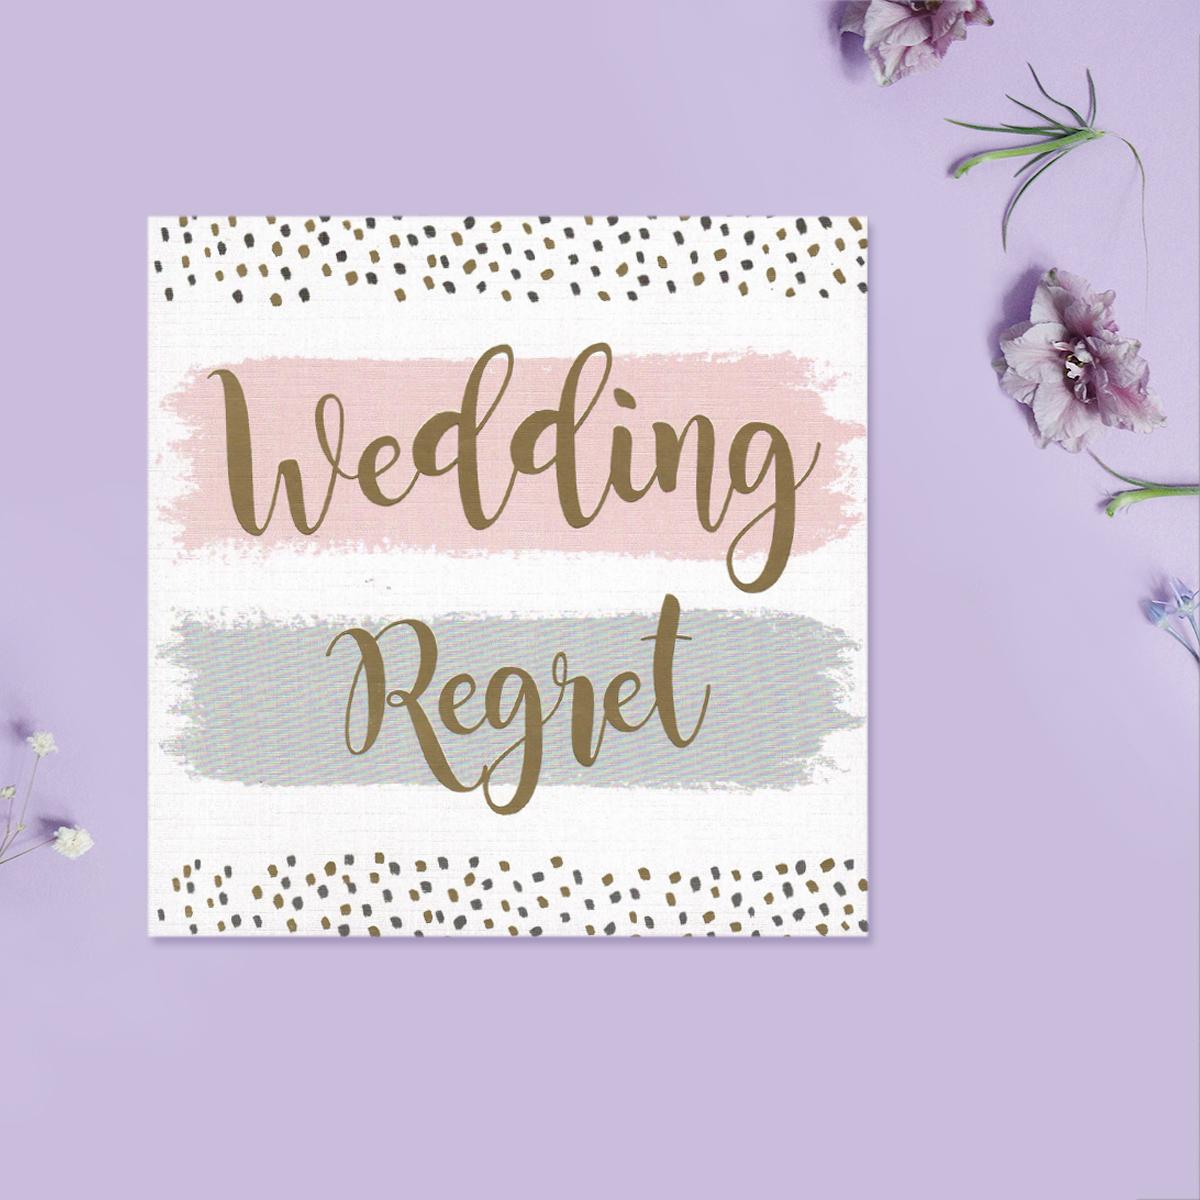 Wedding Regret Card Front Image